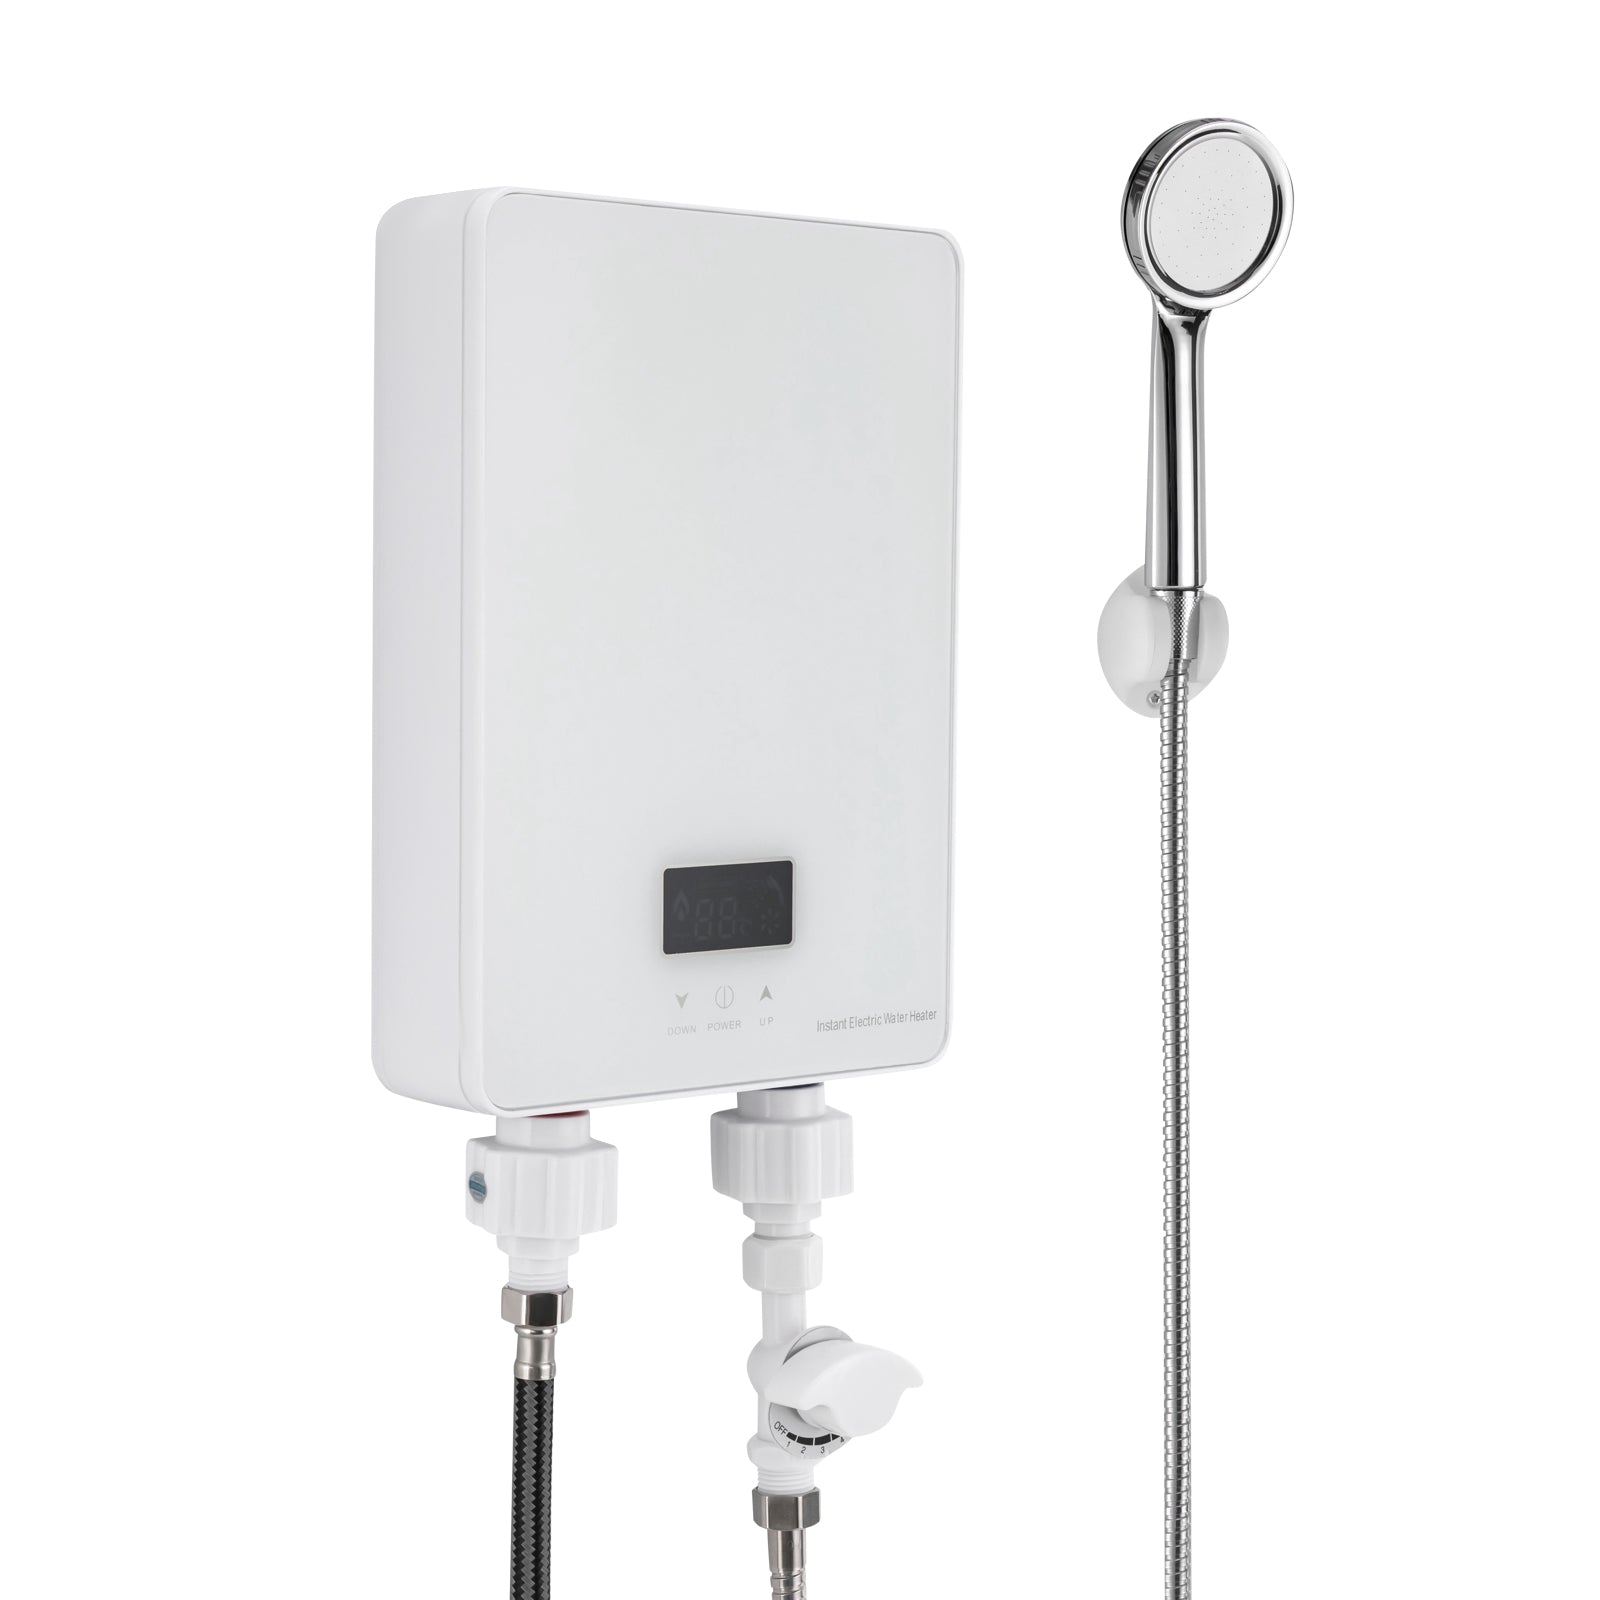 Scaldabagno elettronico 6000 W Doccia Tankless Scaldabagno con pannello LED, per bagno, cucina, bagno, doccia(bianco)